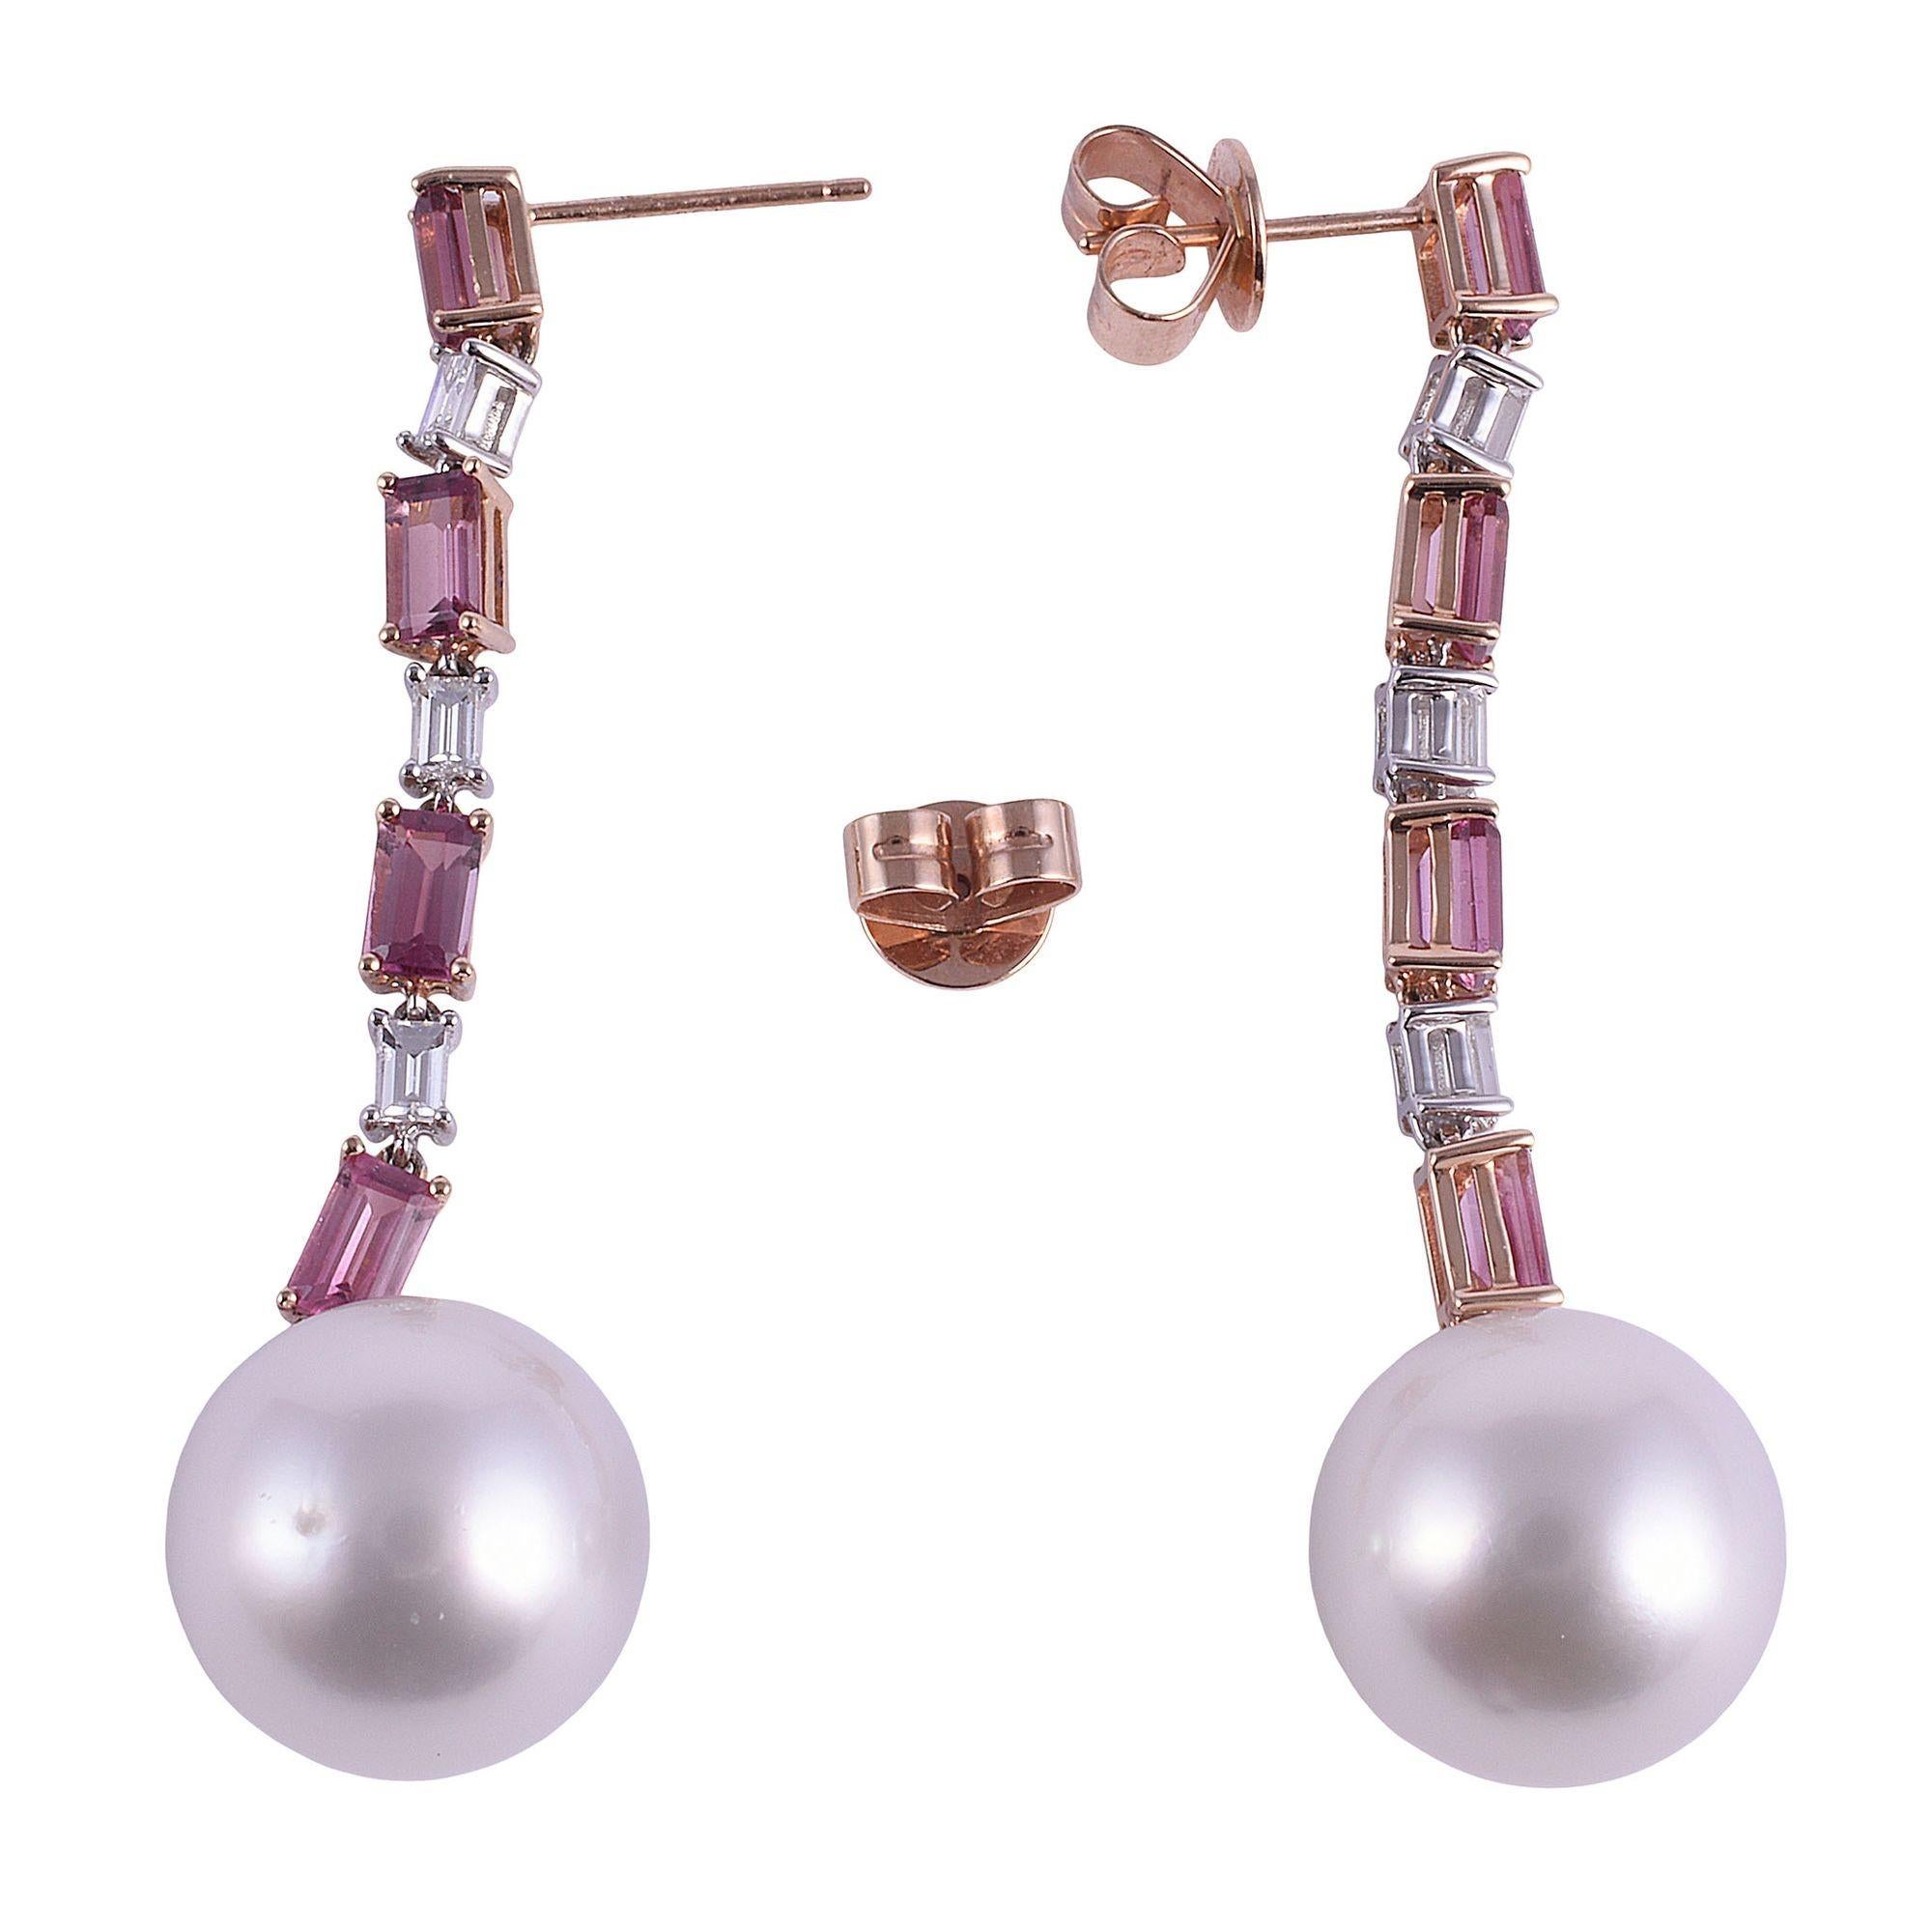 Boucles d'oreilles pendantes en or rose 18 carats avec perles des mers du sud. Ces boucles d'oreilles sont réalisées en or rose 18 carats et mettent en valeur des perles de culture des mers du Sud de 13,5 mm suspendues à une ligne de tourmalines